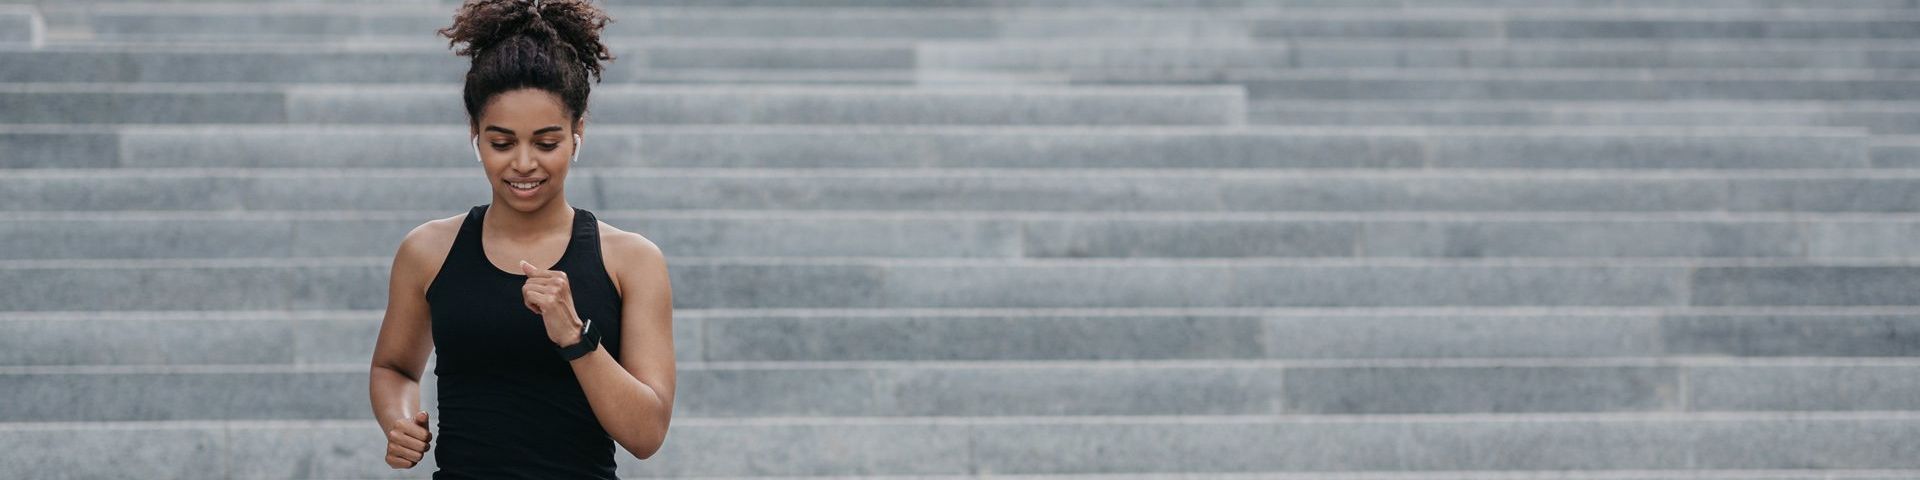 A woman in a black vest runs down a set of concrete steps